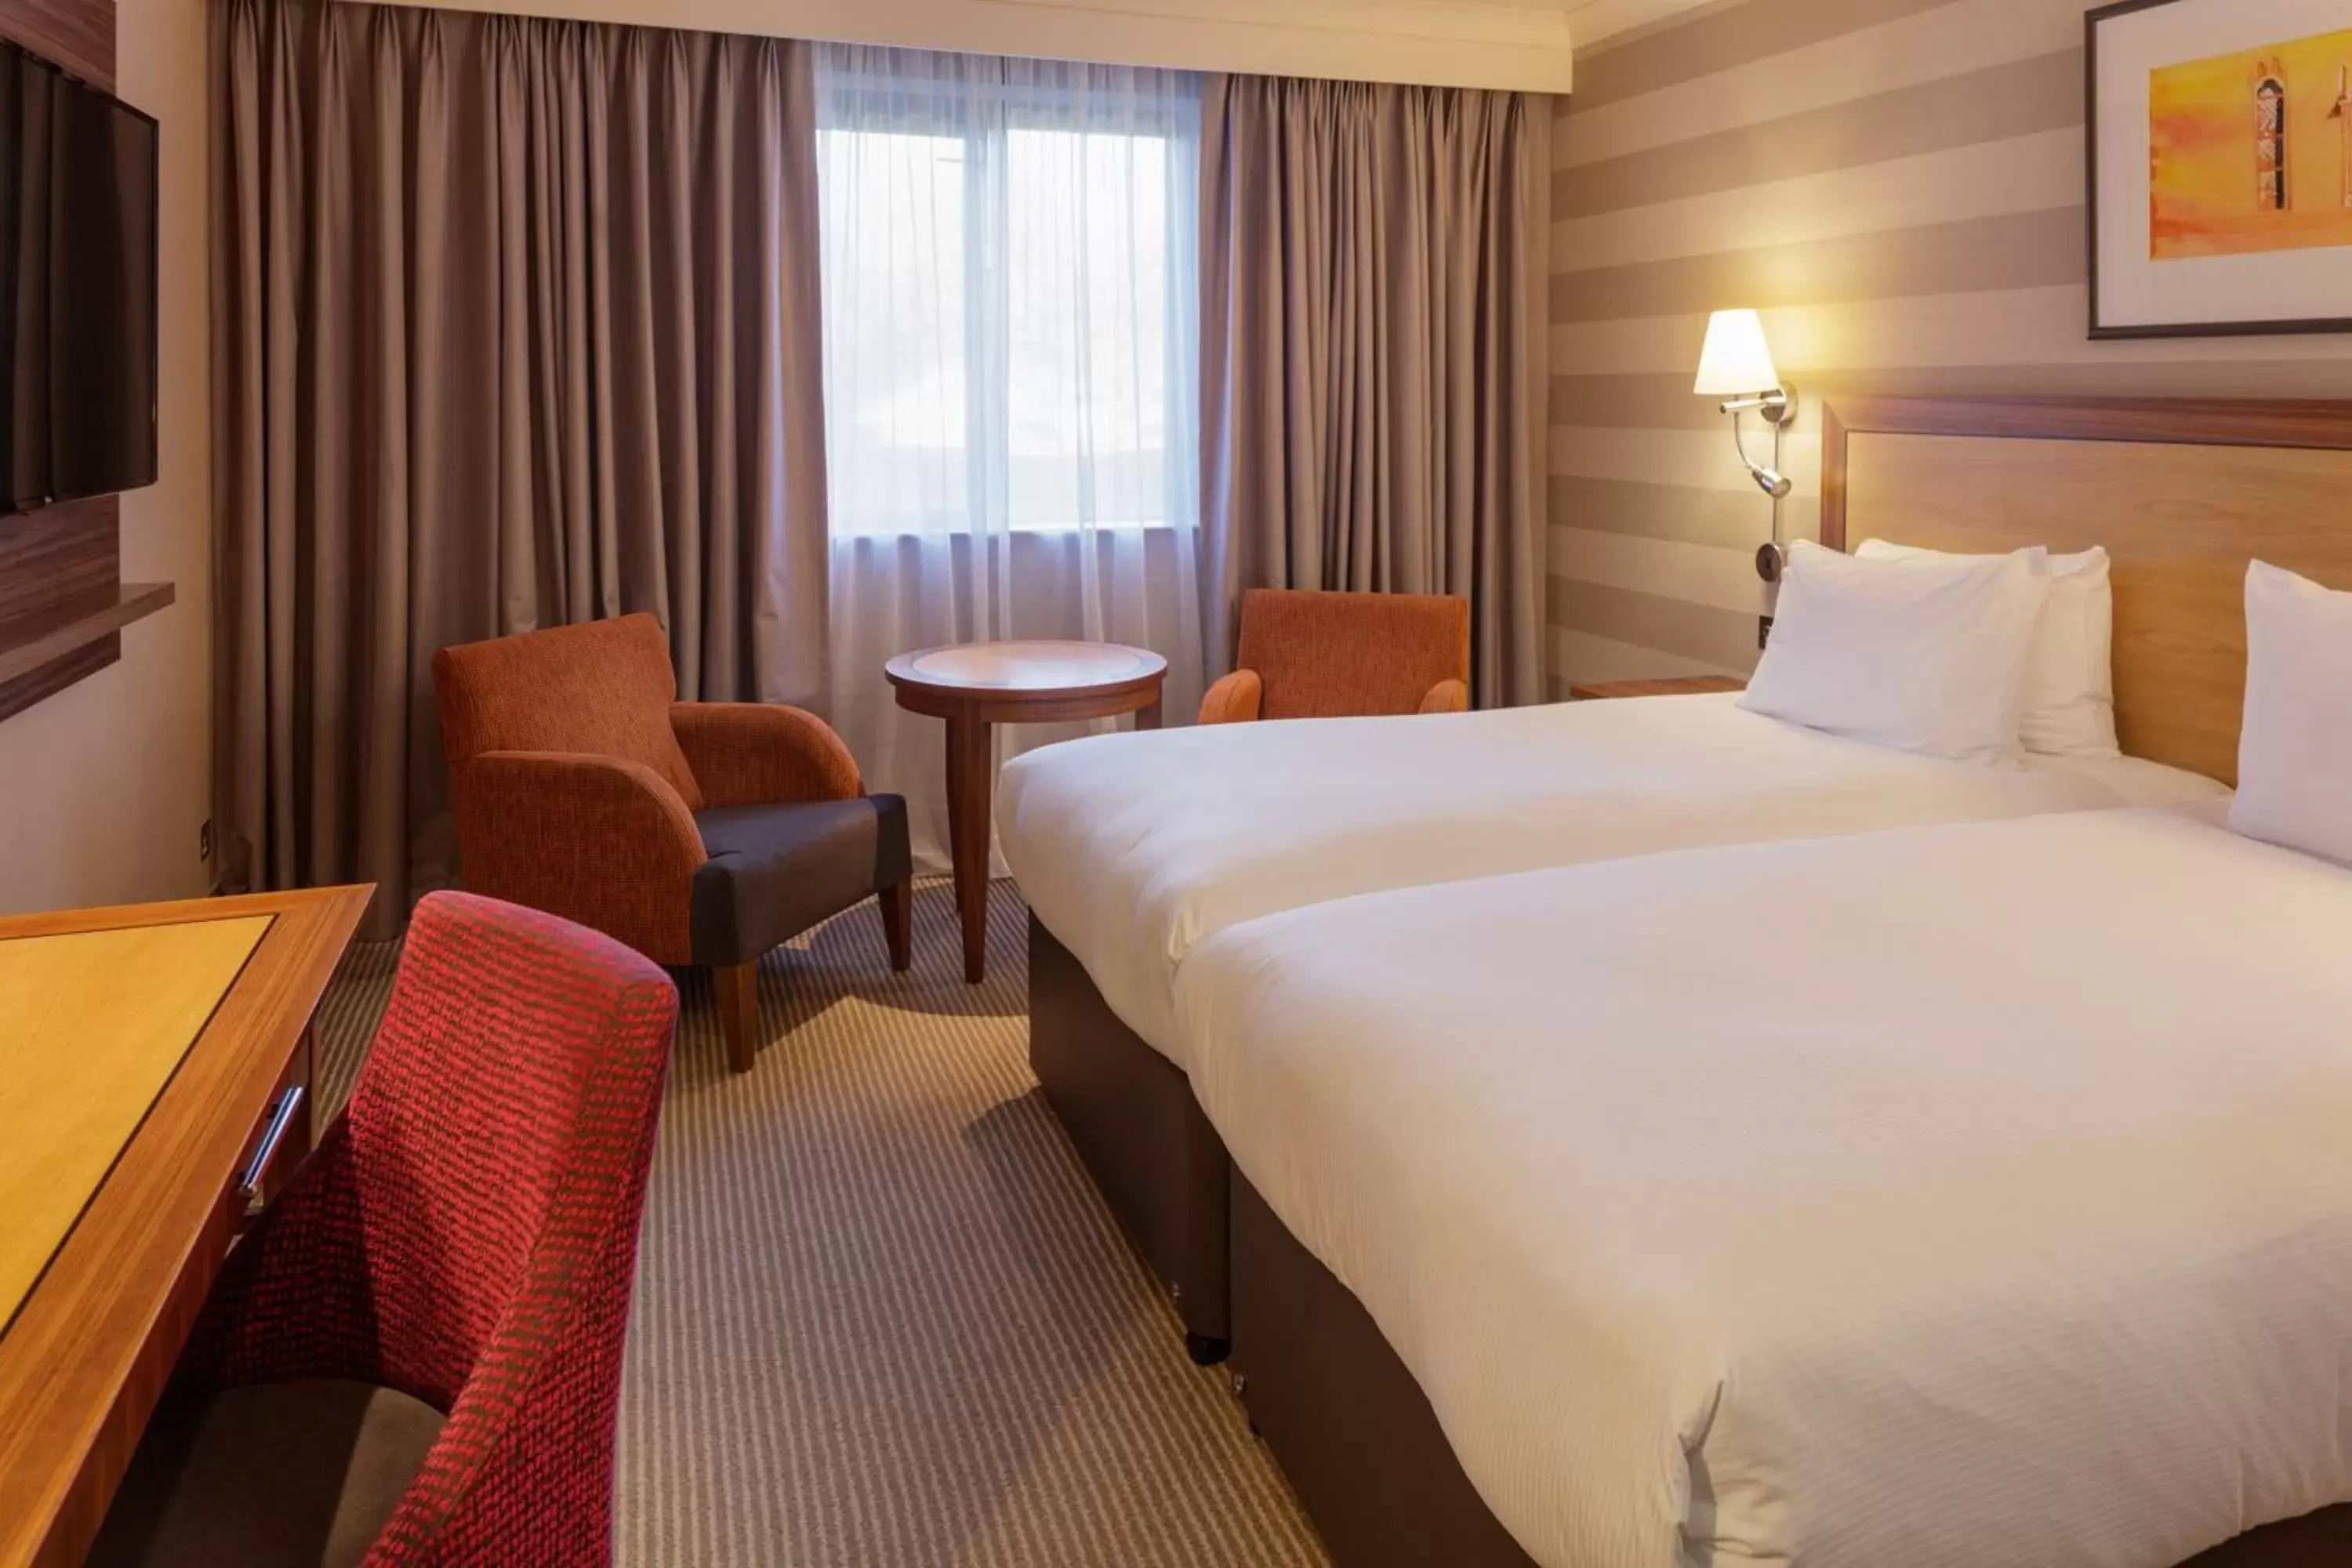 Bedroom, Bed in Cambridge Belfry Hotel & Spa